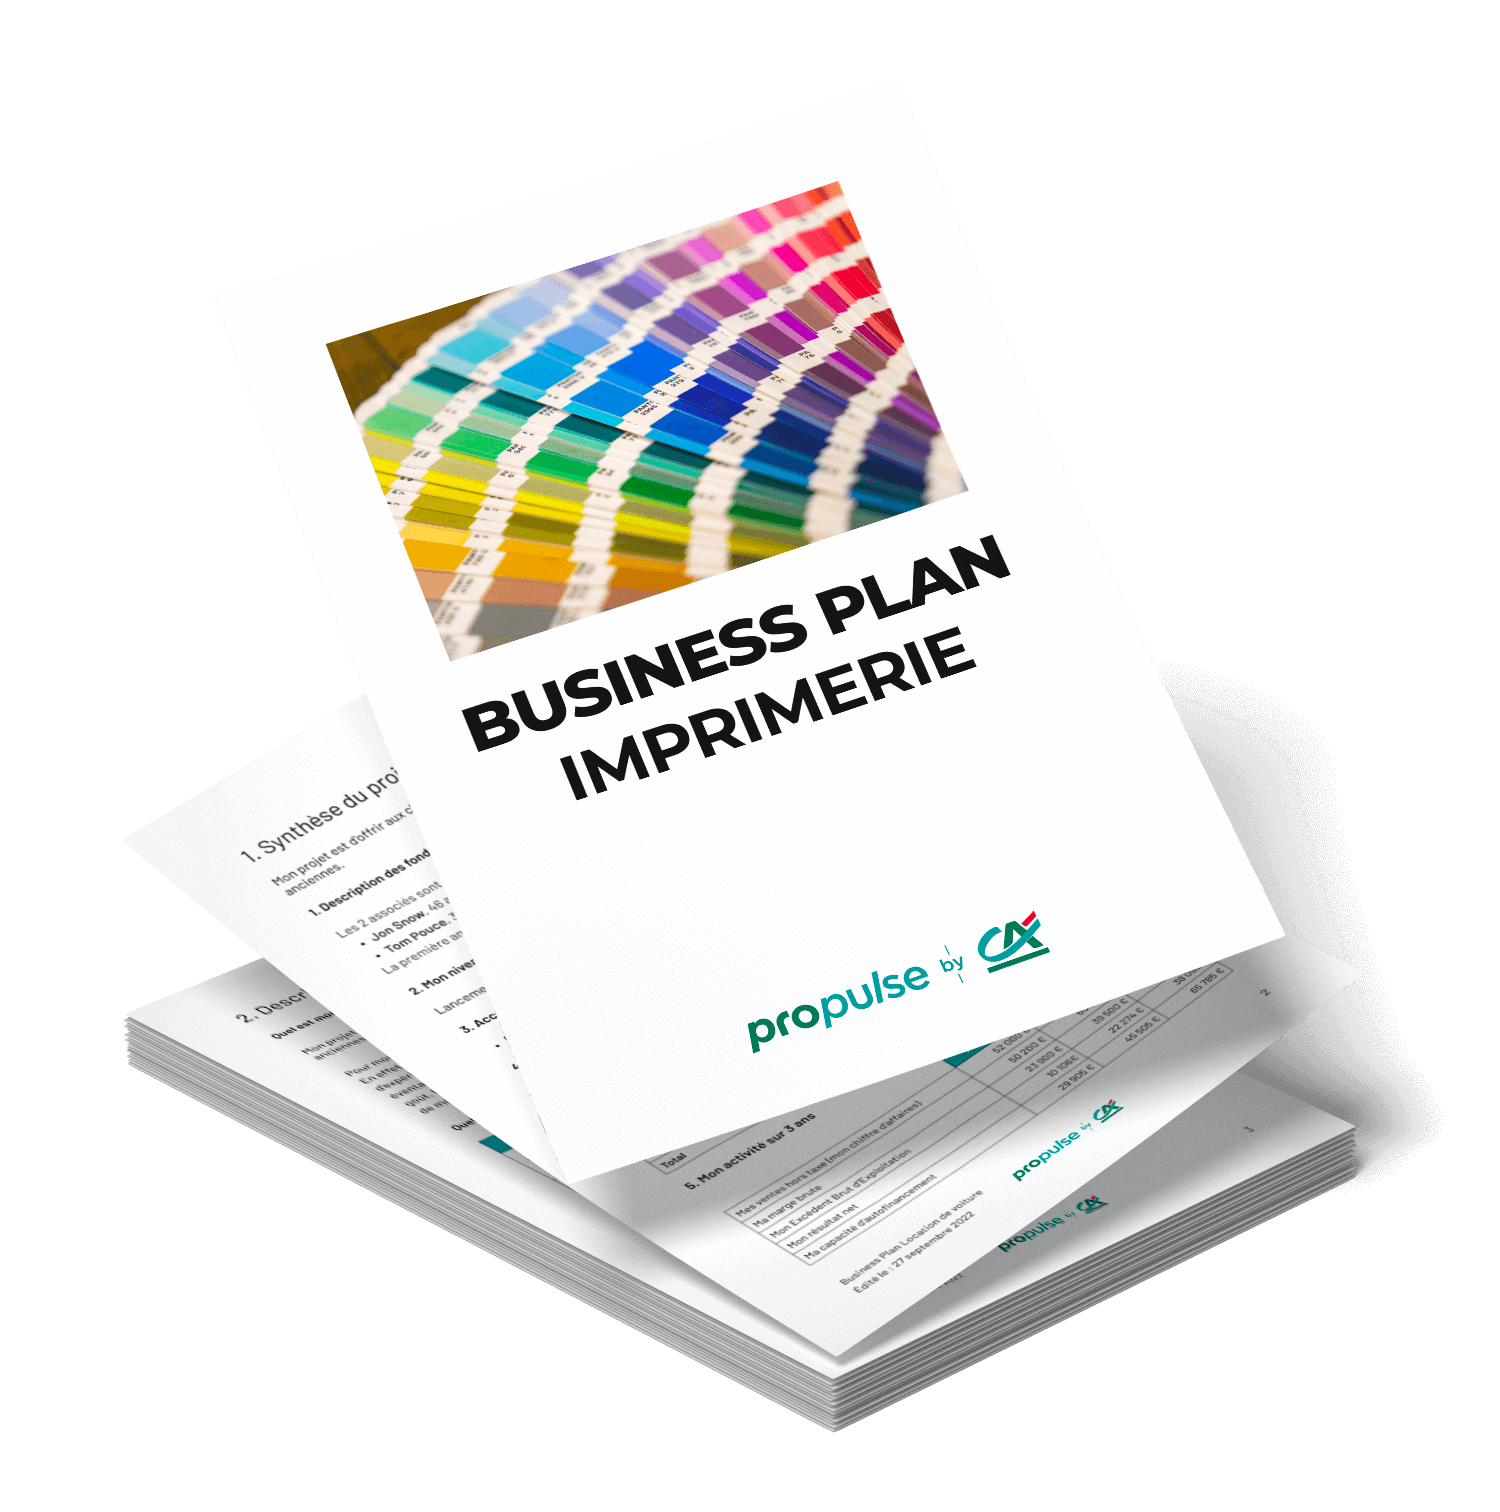 Business plan imprimerie